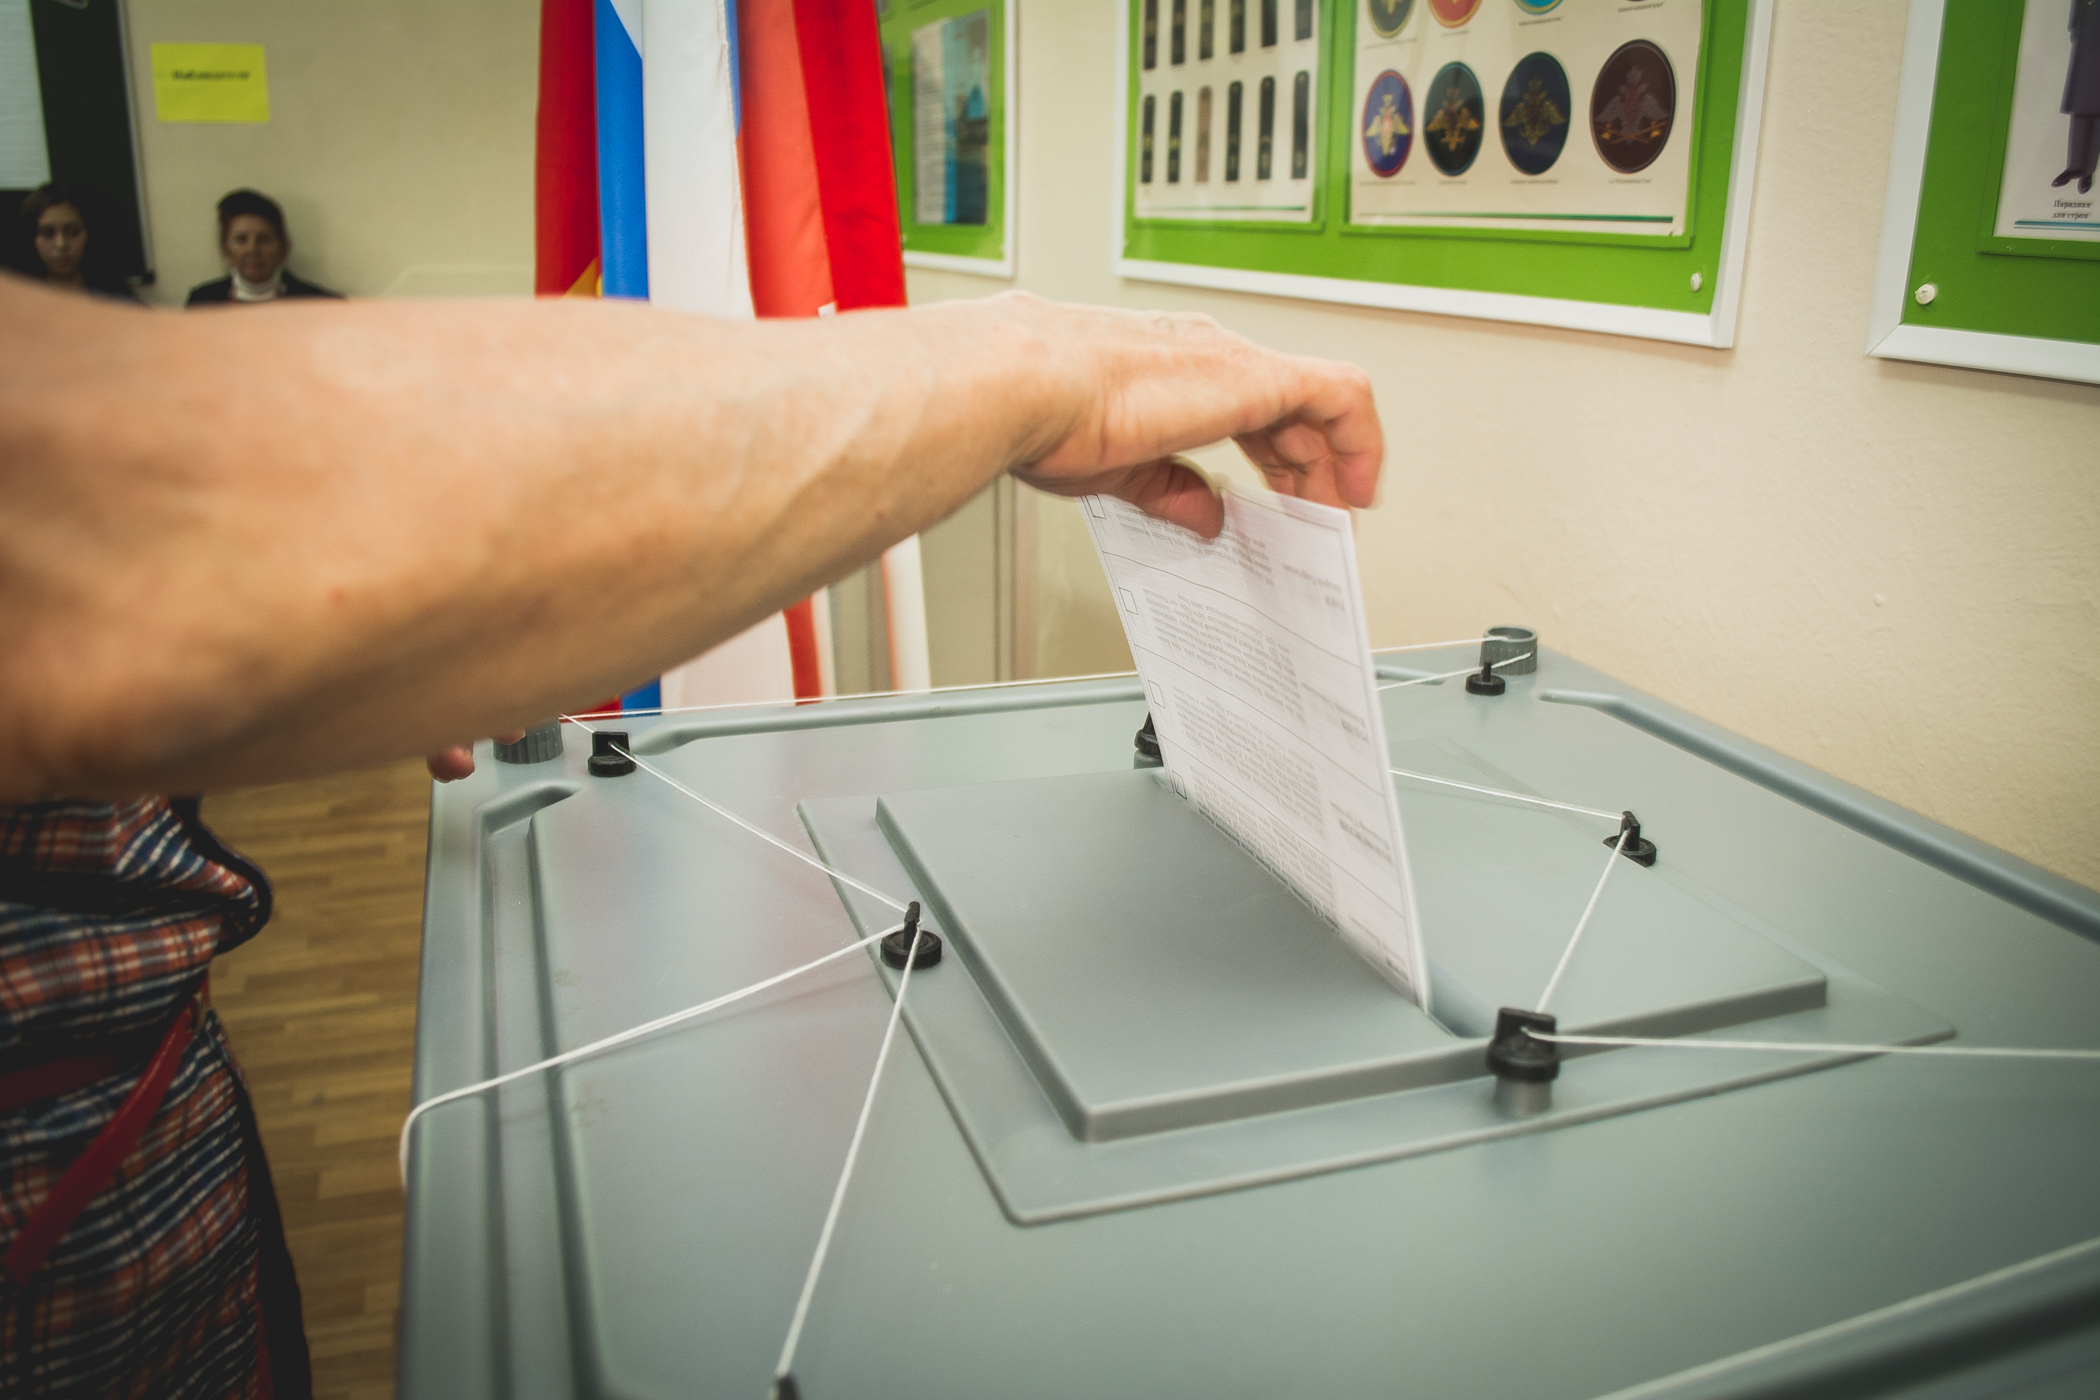 Члены Общественной палаты Оренбурга идут на предварительные выборы, нарушая регламент